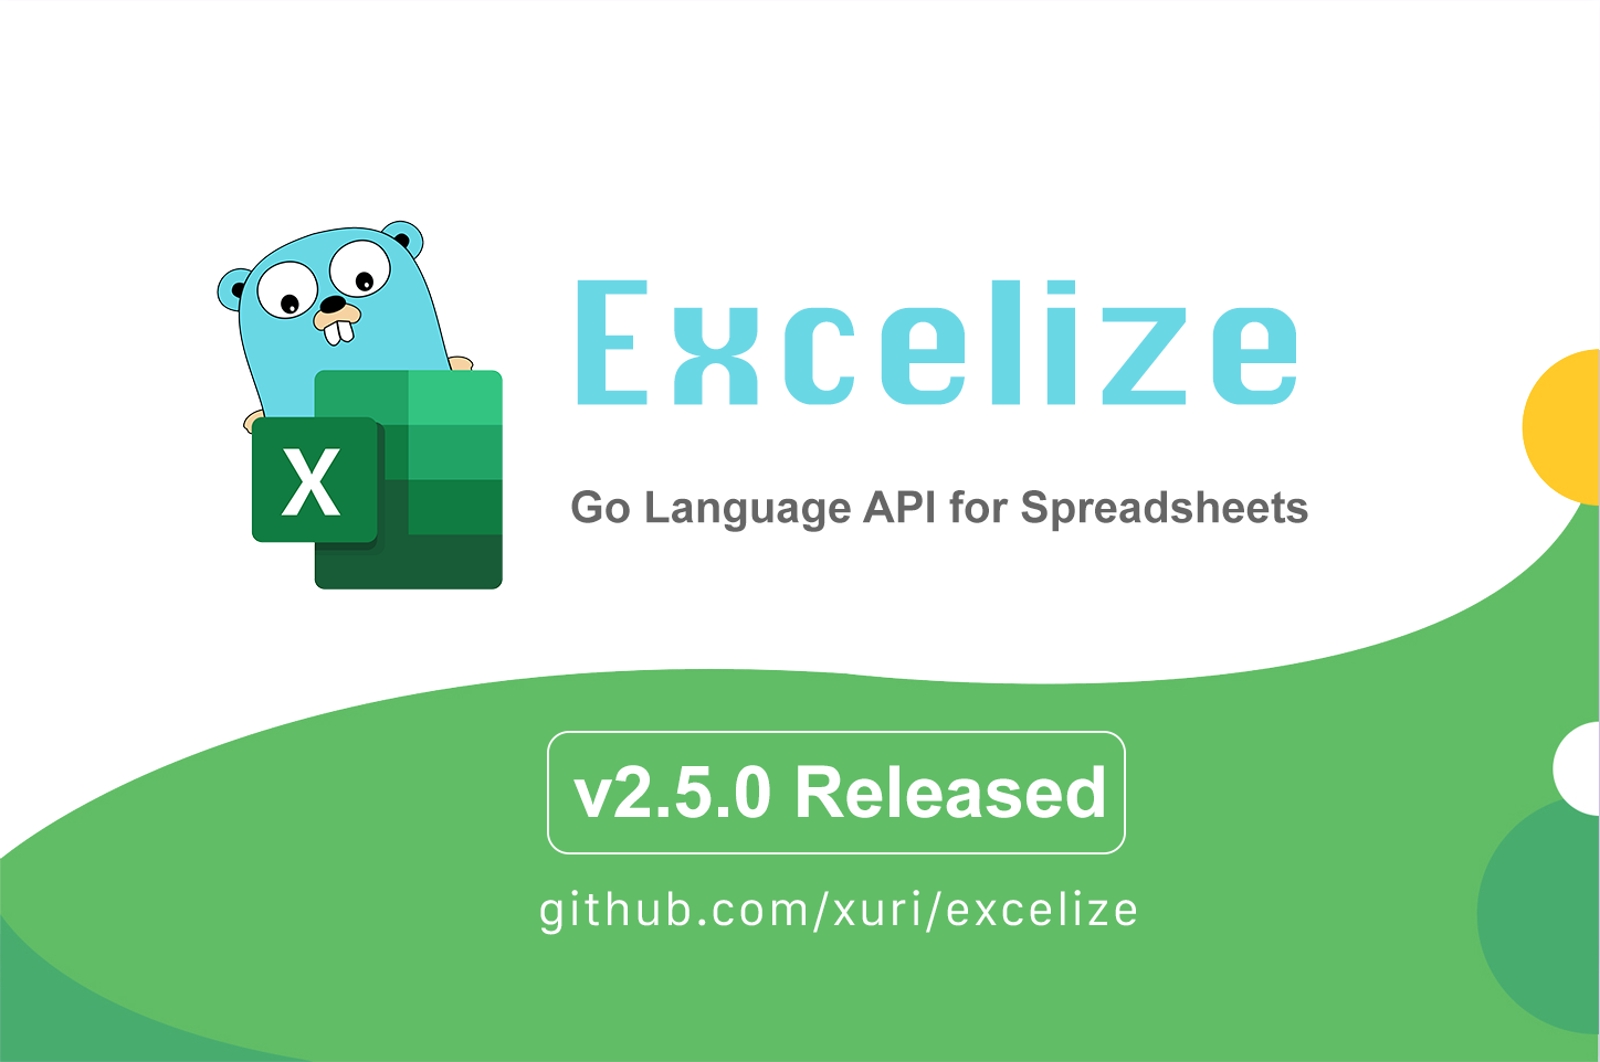 Go 言語スプレッドシートライブラリ：Excelize 2.5.0 がリリースされました